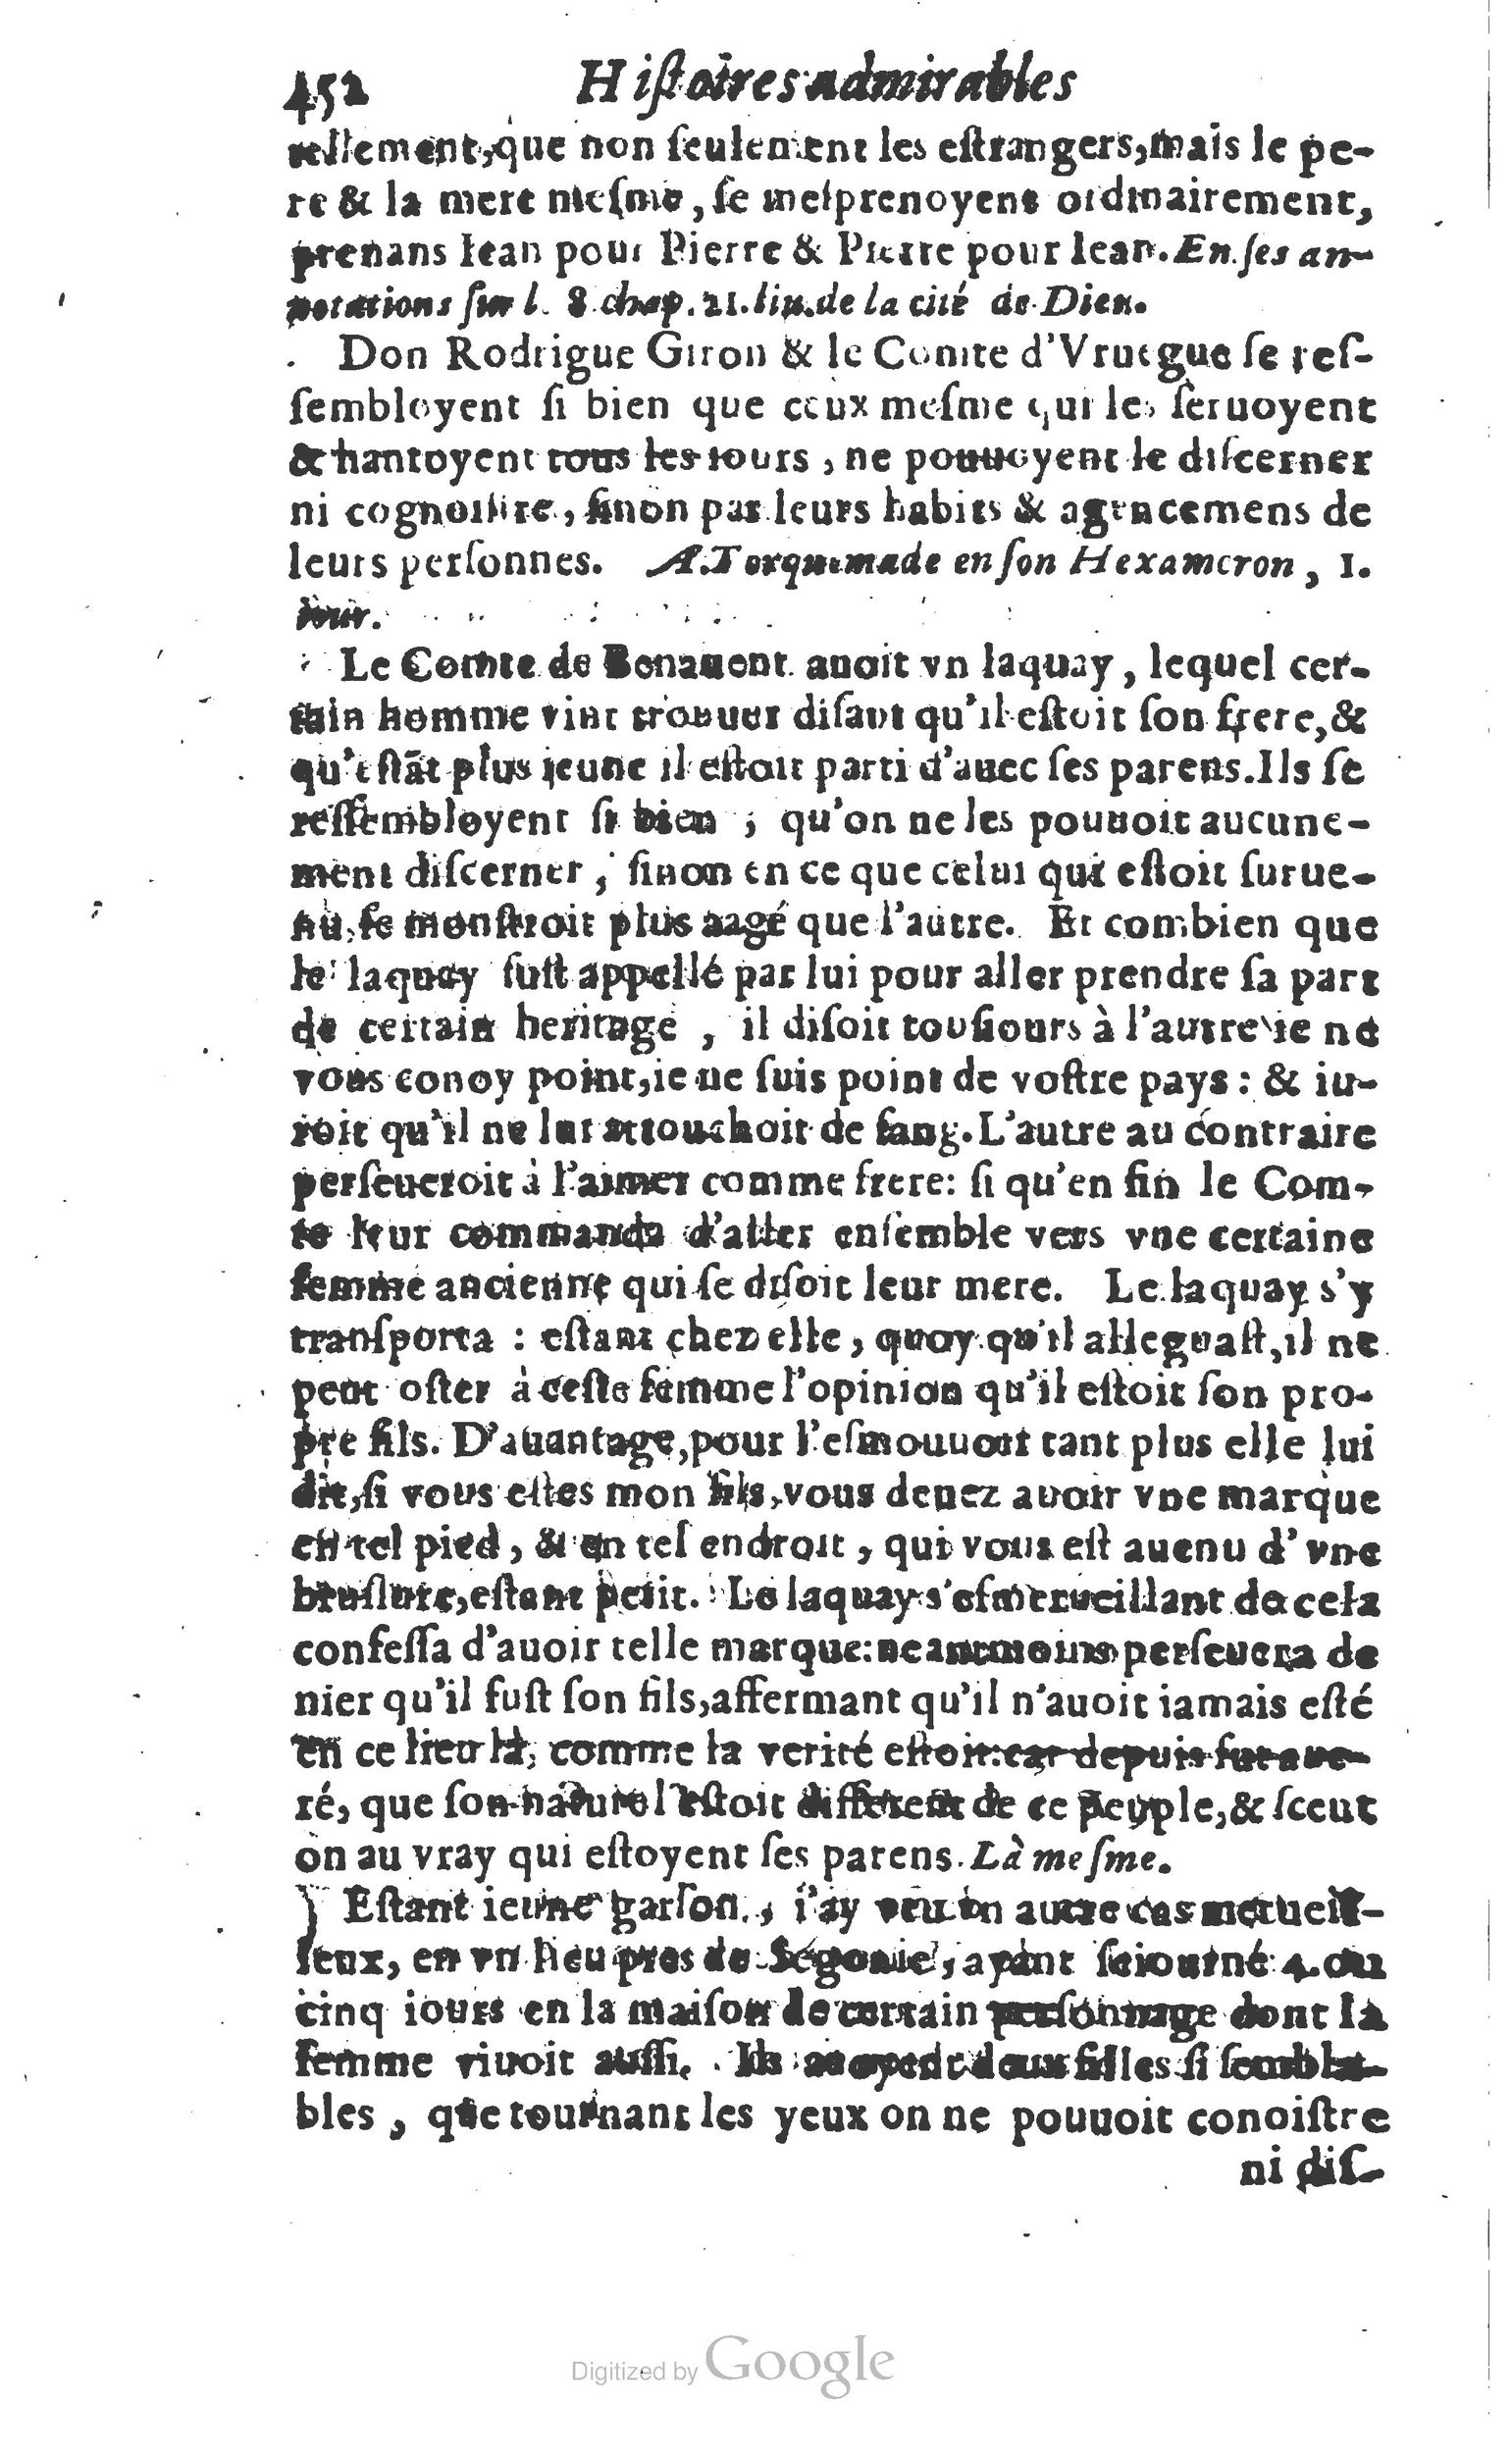 1610 Trésor d’histoires admirables et mémorables de nostre temps Marceau Princeton_Page_0473.jpg